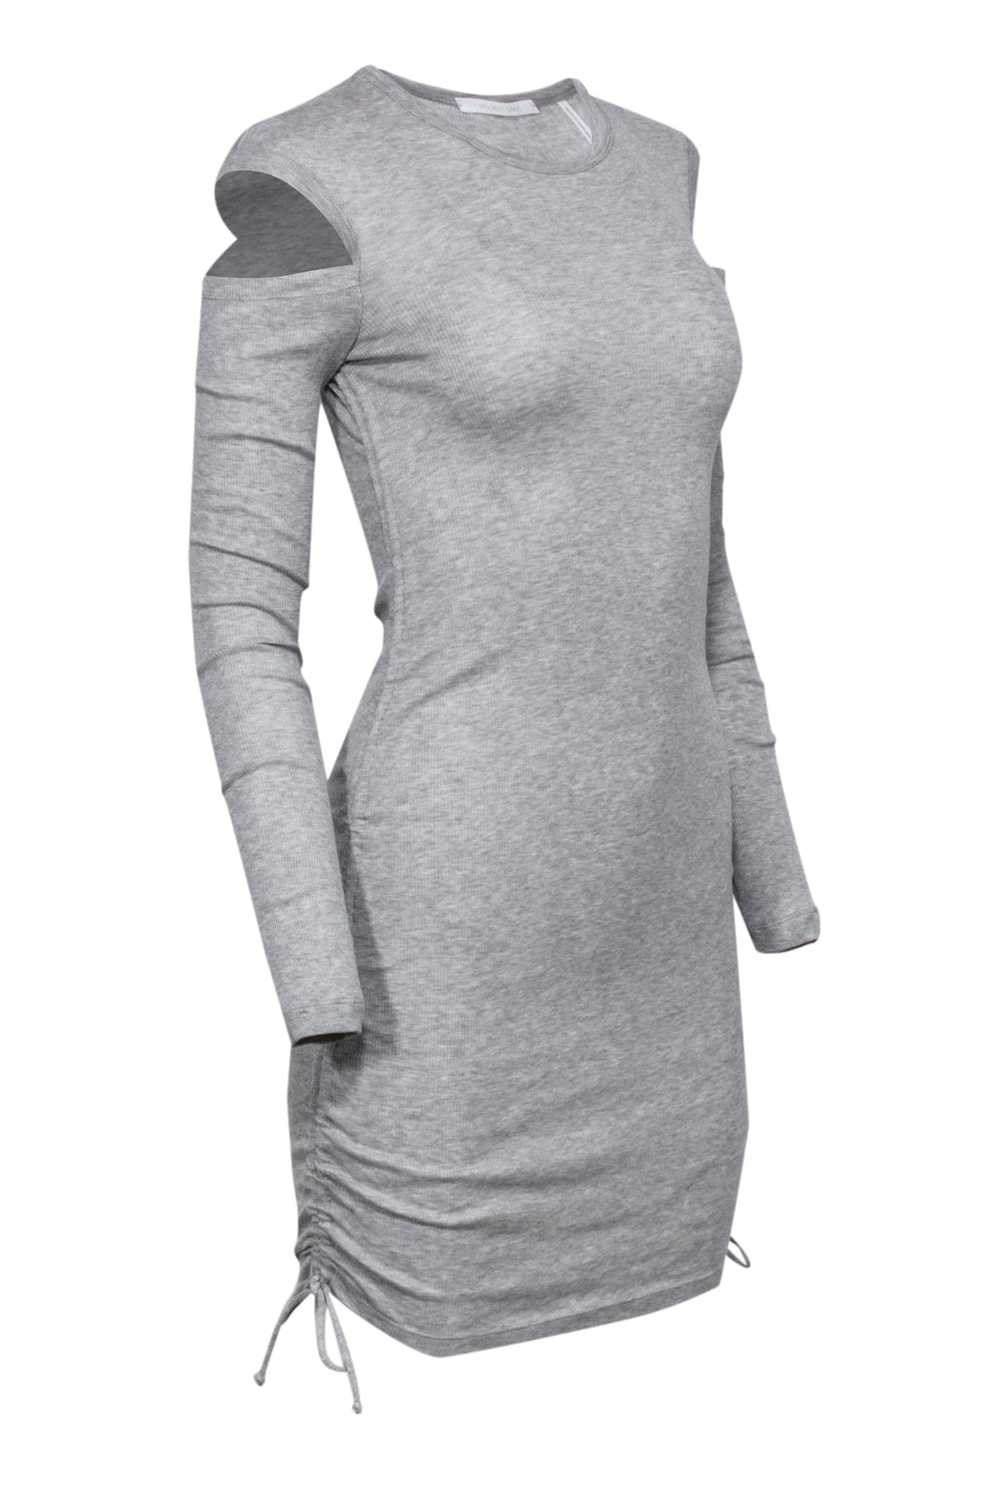 Helmut Lang - Grey Ribbed Cold Shoulder Long Slee… - image 2